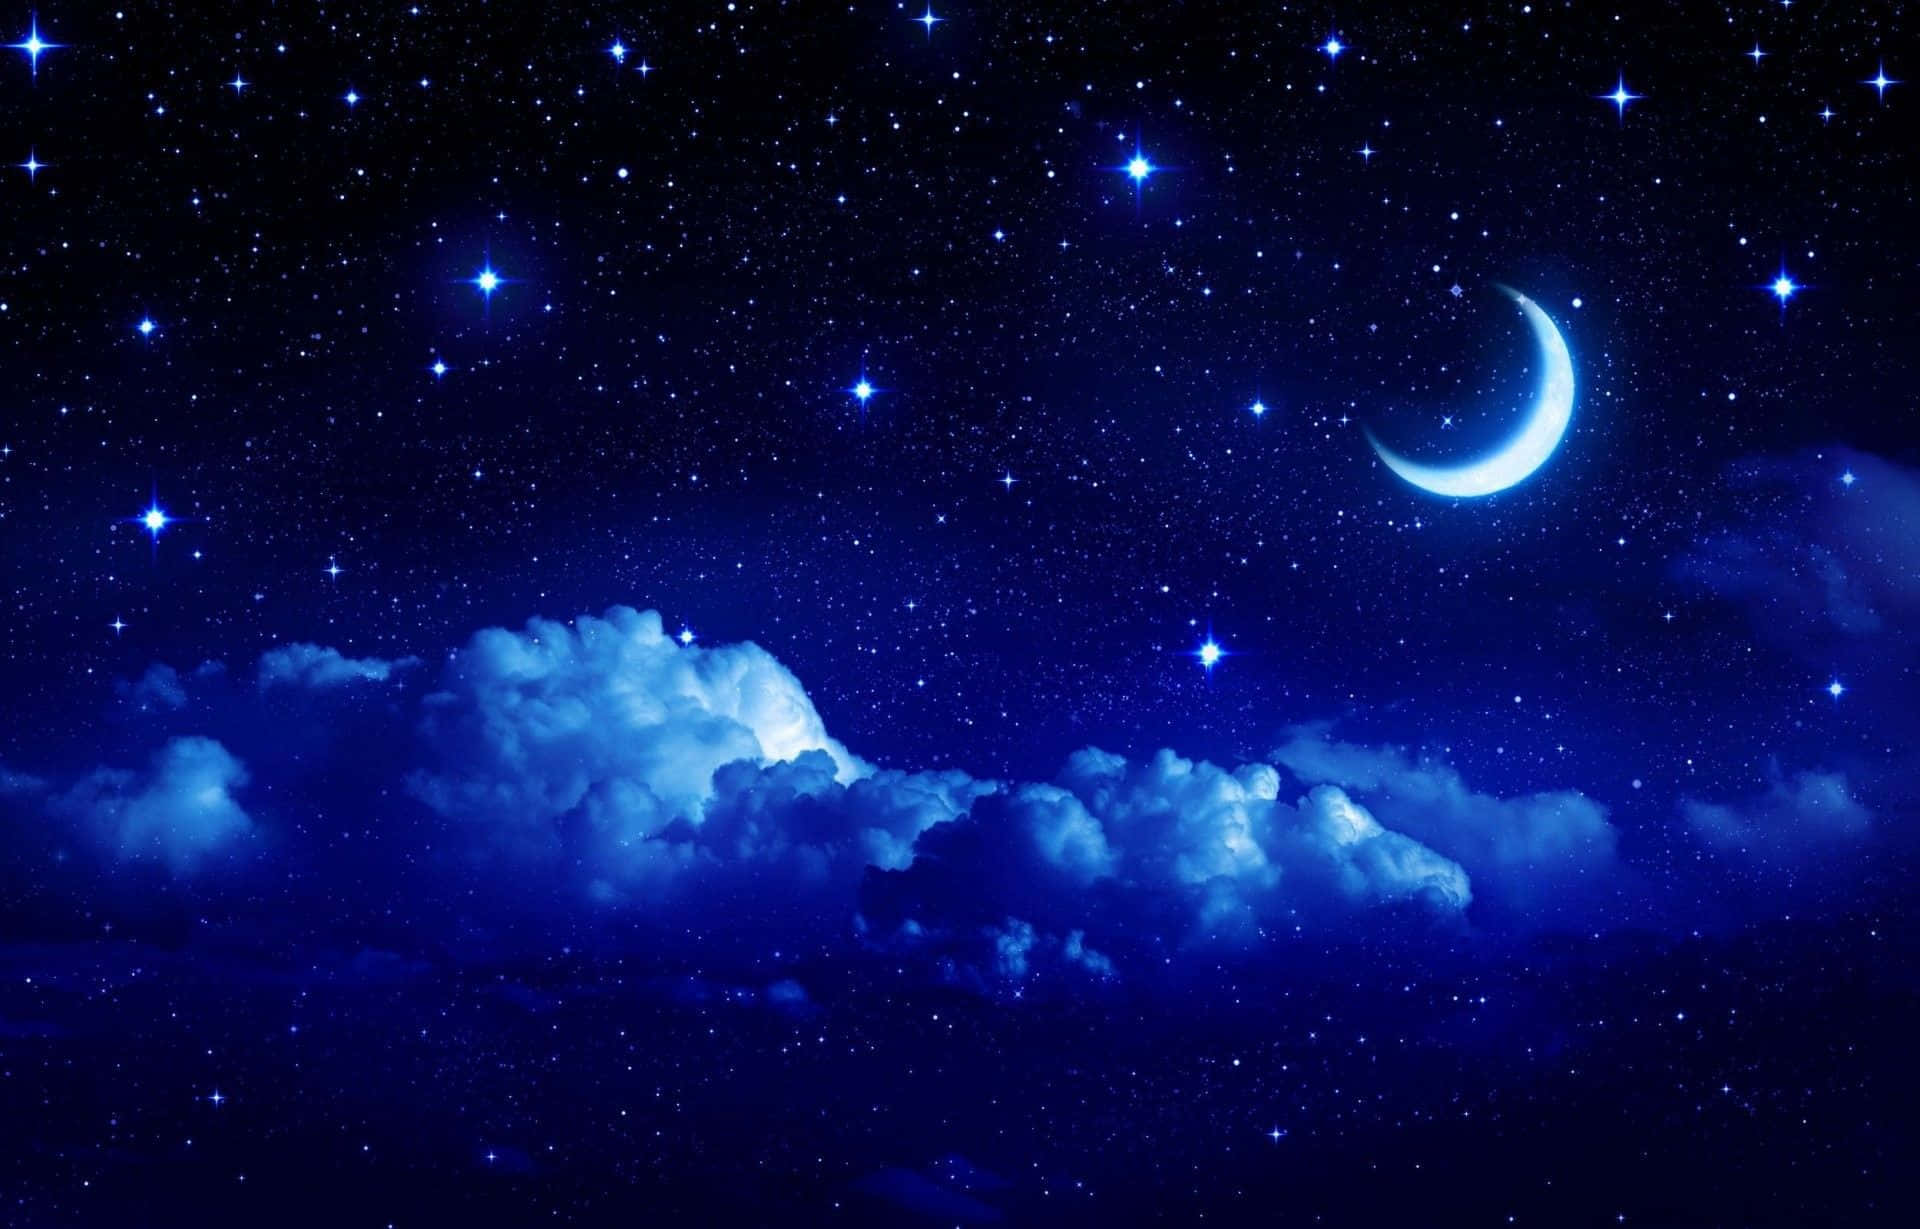 Imagende Cielo Nocturno Con Luna Creciente Y Estrellas.